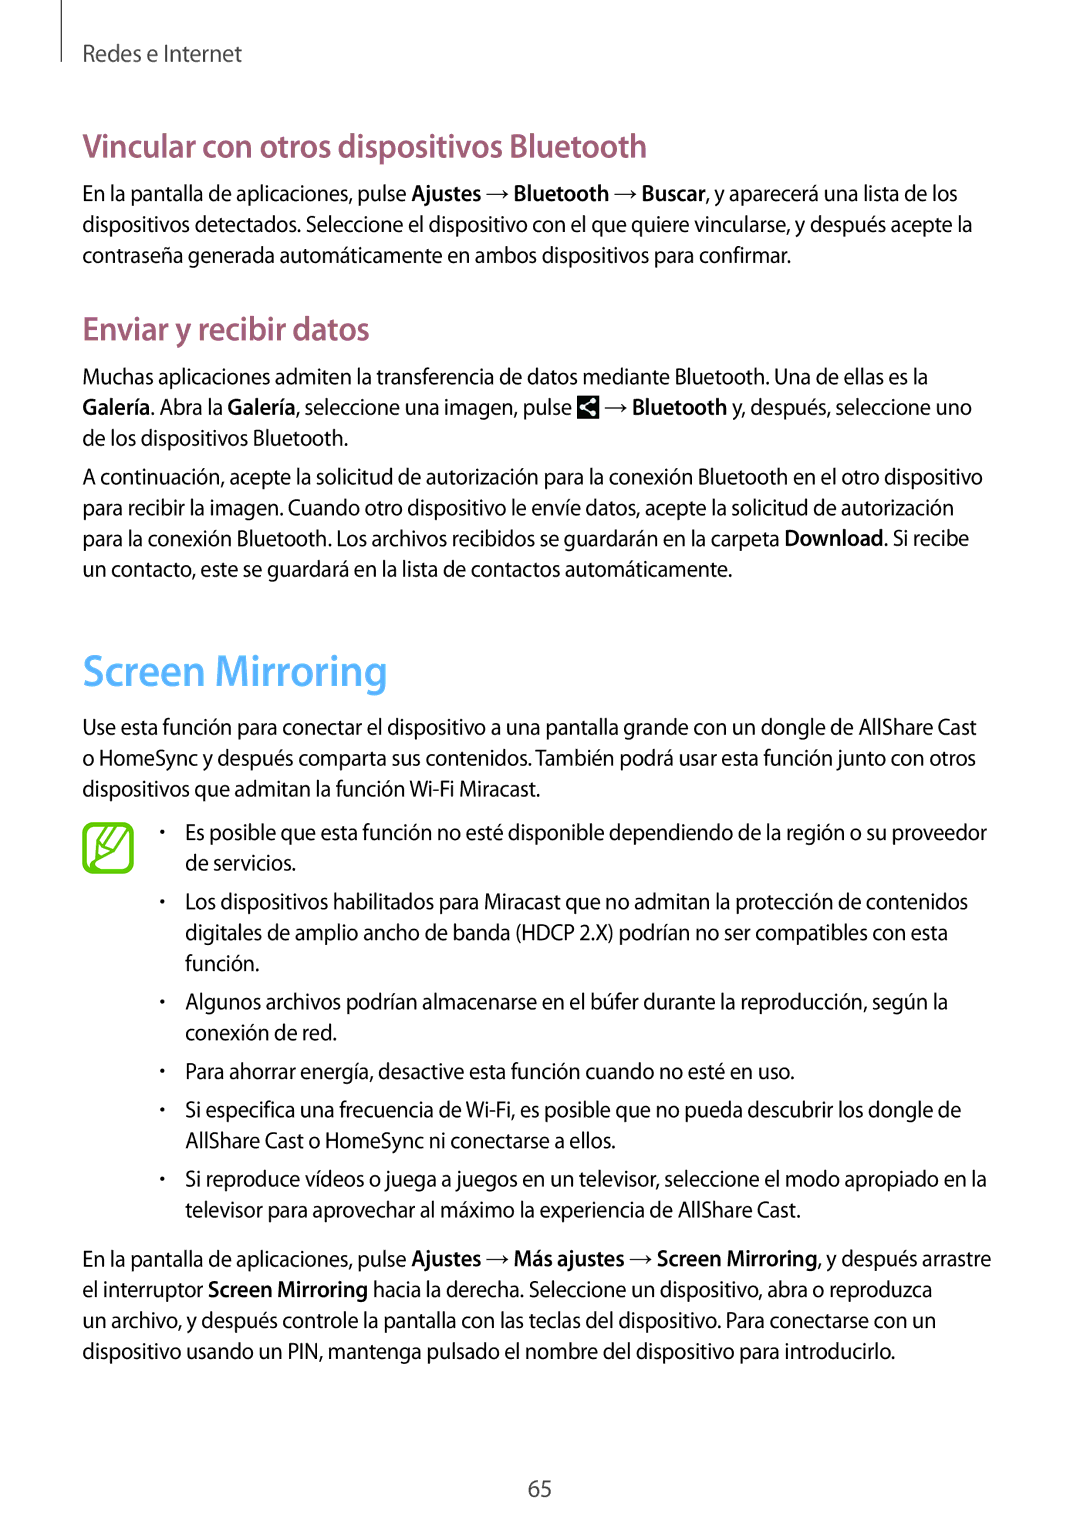 Samsung GT-N8020EAAATL manual Screen Mirroring, Vincular con otros dispositivos Bluetooth, Enviar y recibir datos 